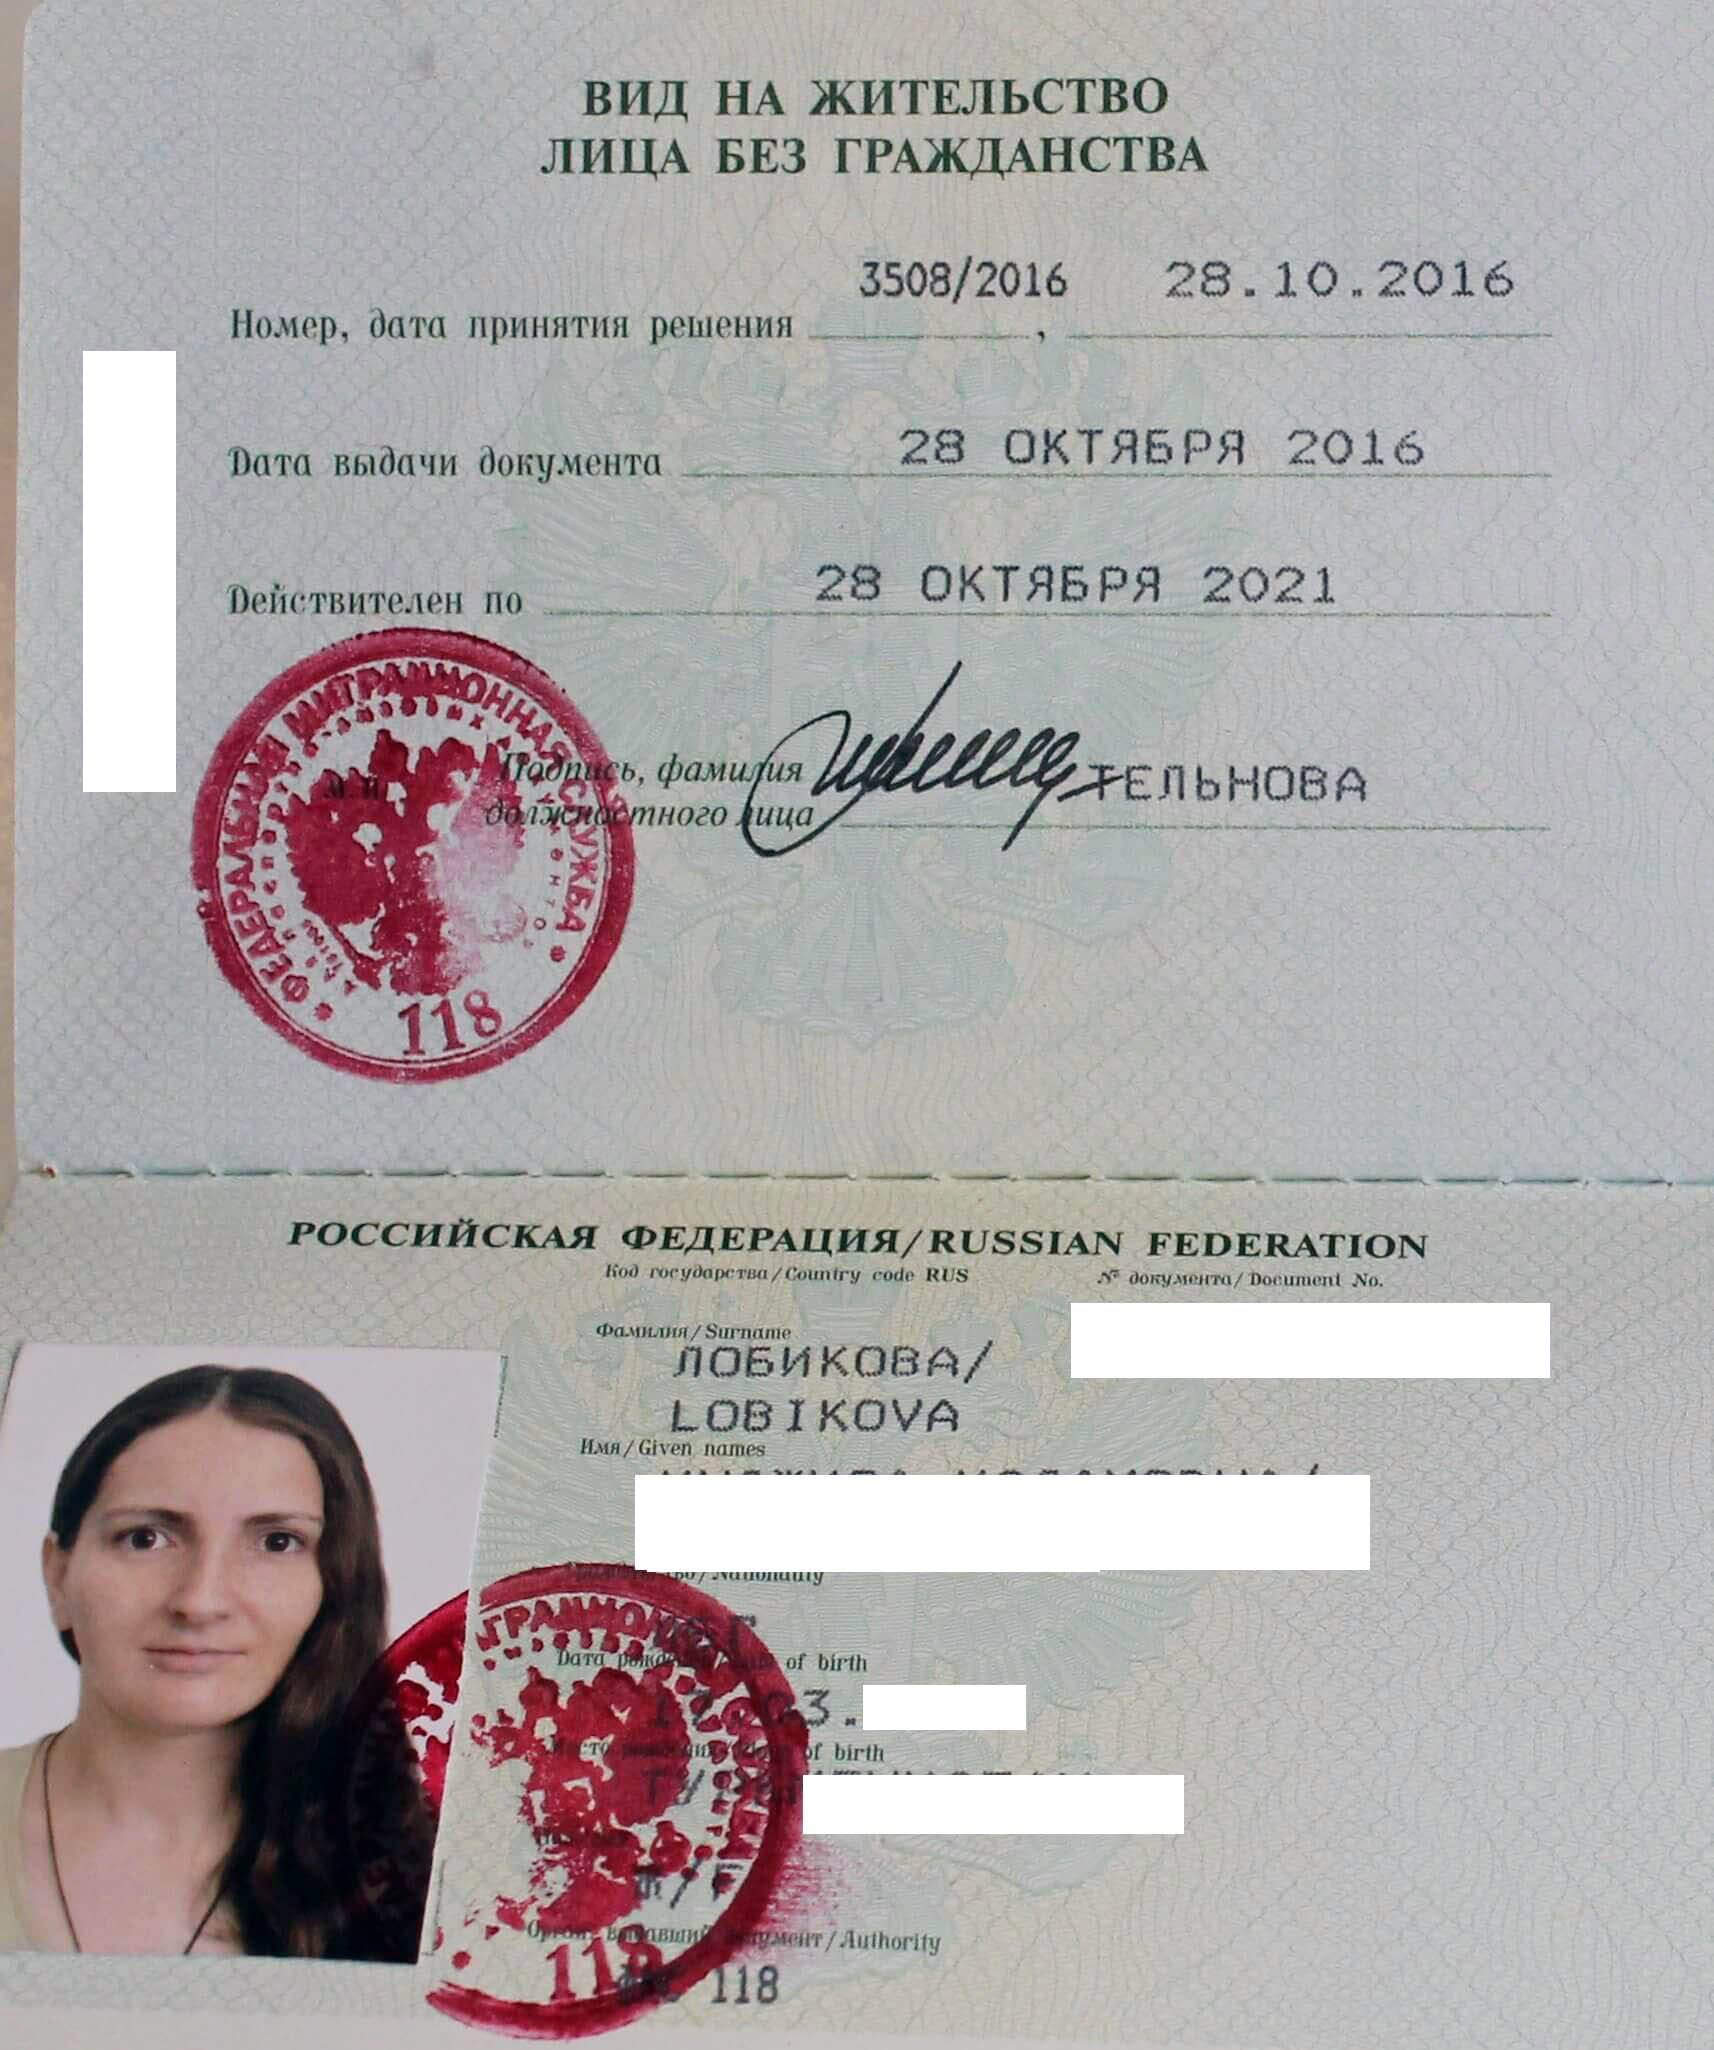 Все пути получения гражданства рф для молдаван – мигранту рус